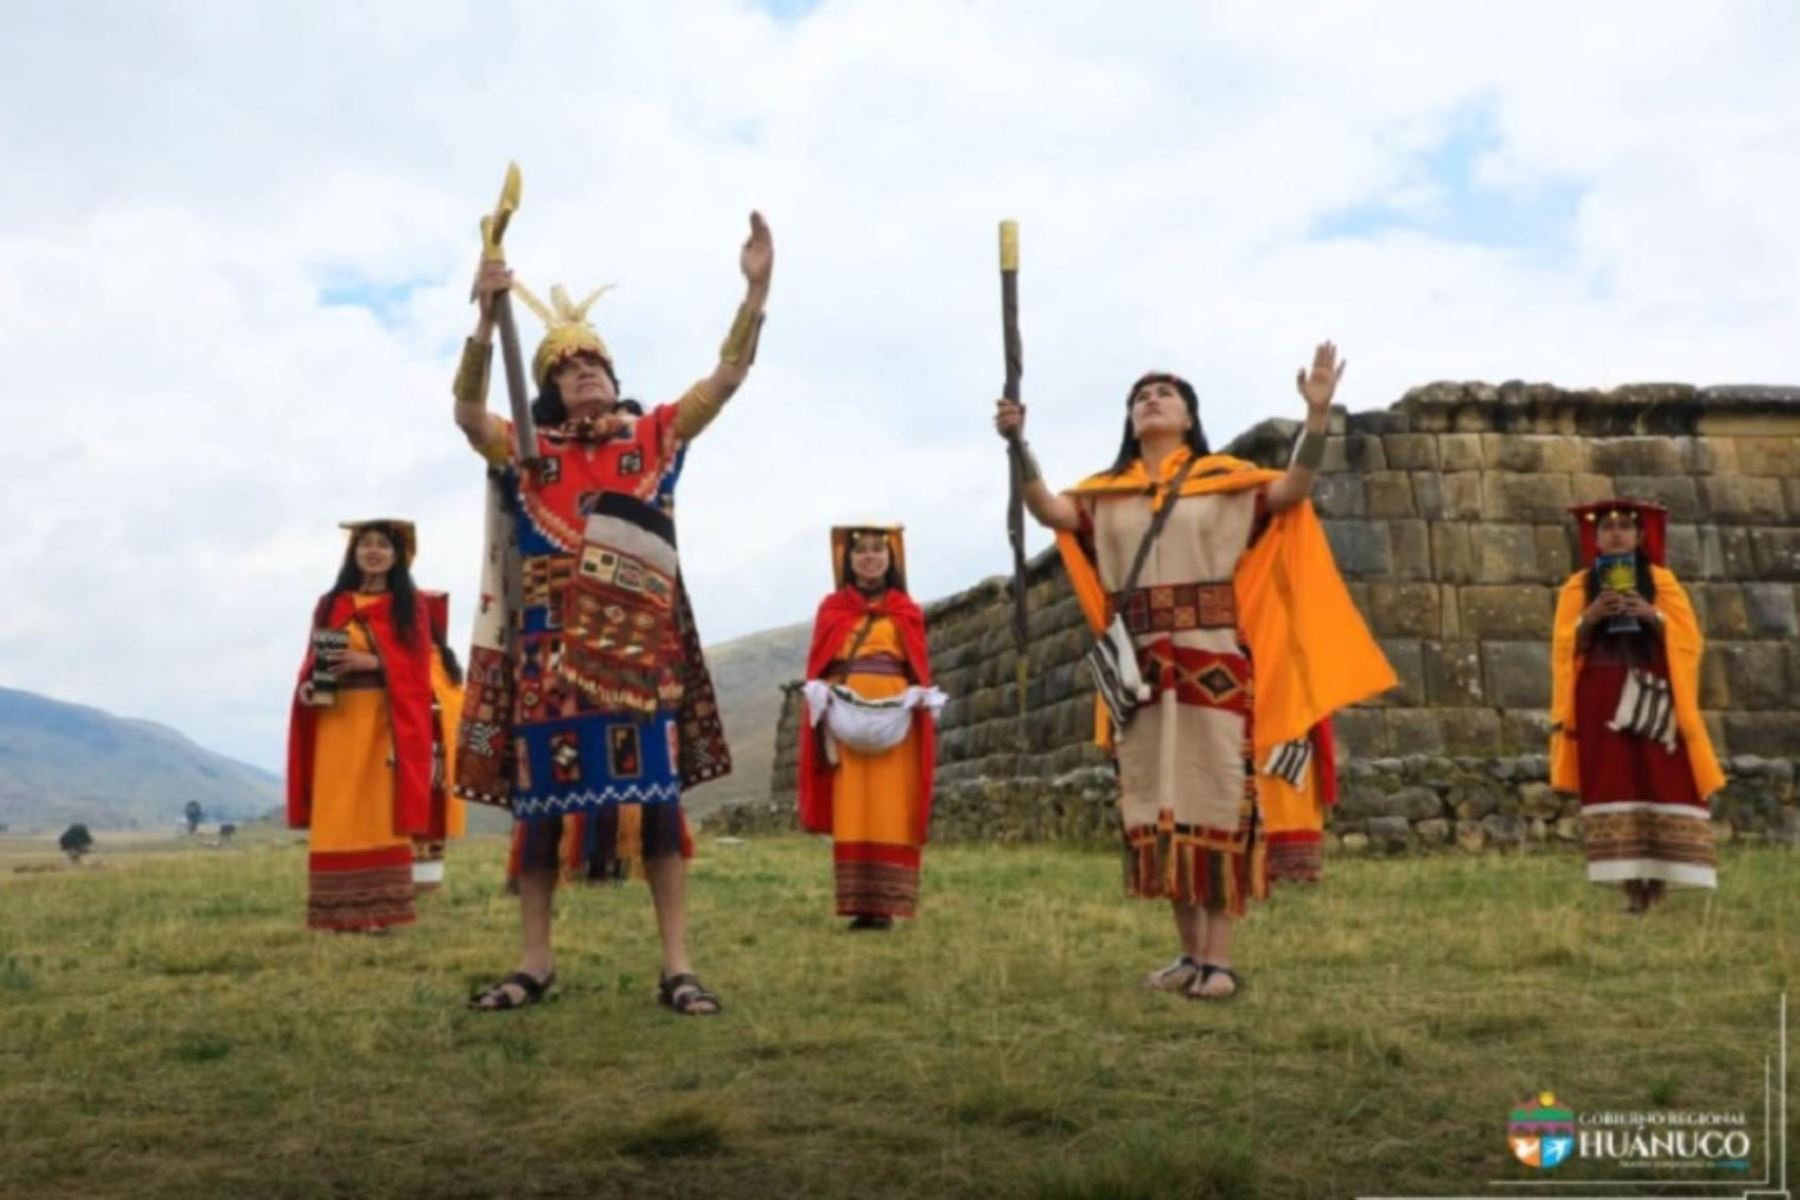 El sitio arqueológico Huánuco Pampa, emblemático escenario del Inti Raymi o Fiesta del Sol en la región Huánuco, reanudó hoy sus actividades turísticas como parte de la reactivación económica y tras implementar el protocolo sanitario para prevenir el contagio y la propagación del covid-19. Foto: Facebook/Gobierno Regional de Huánuco